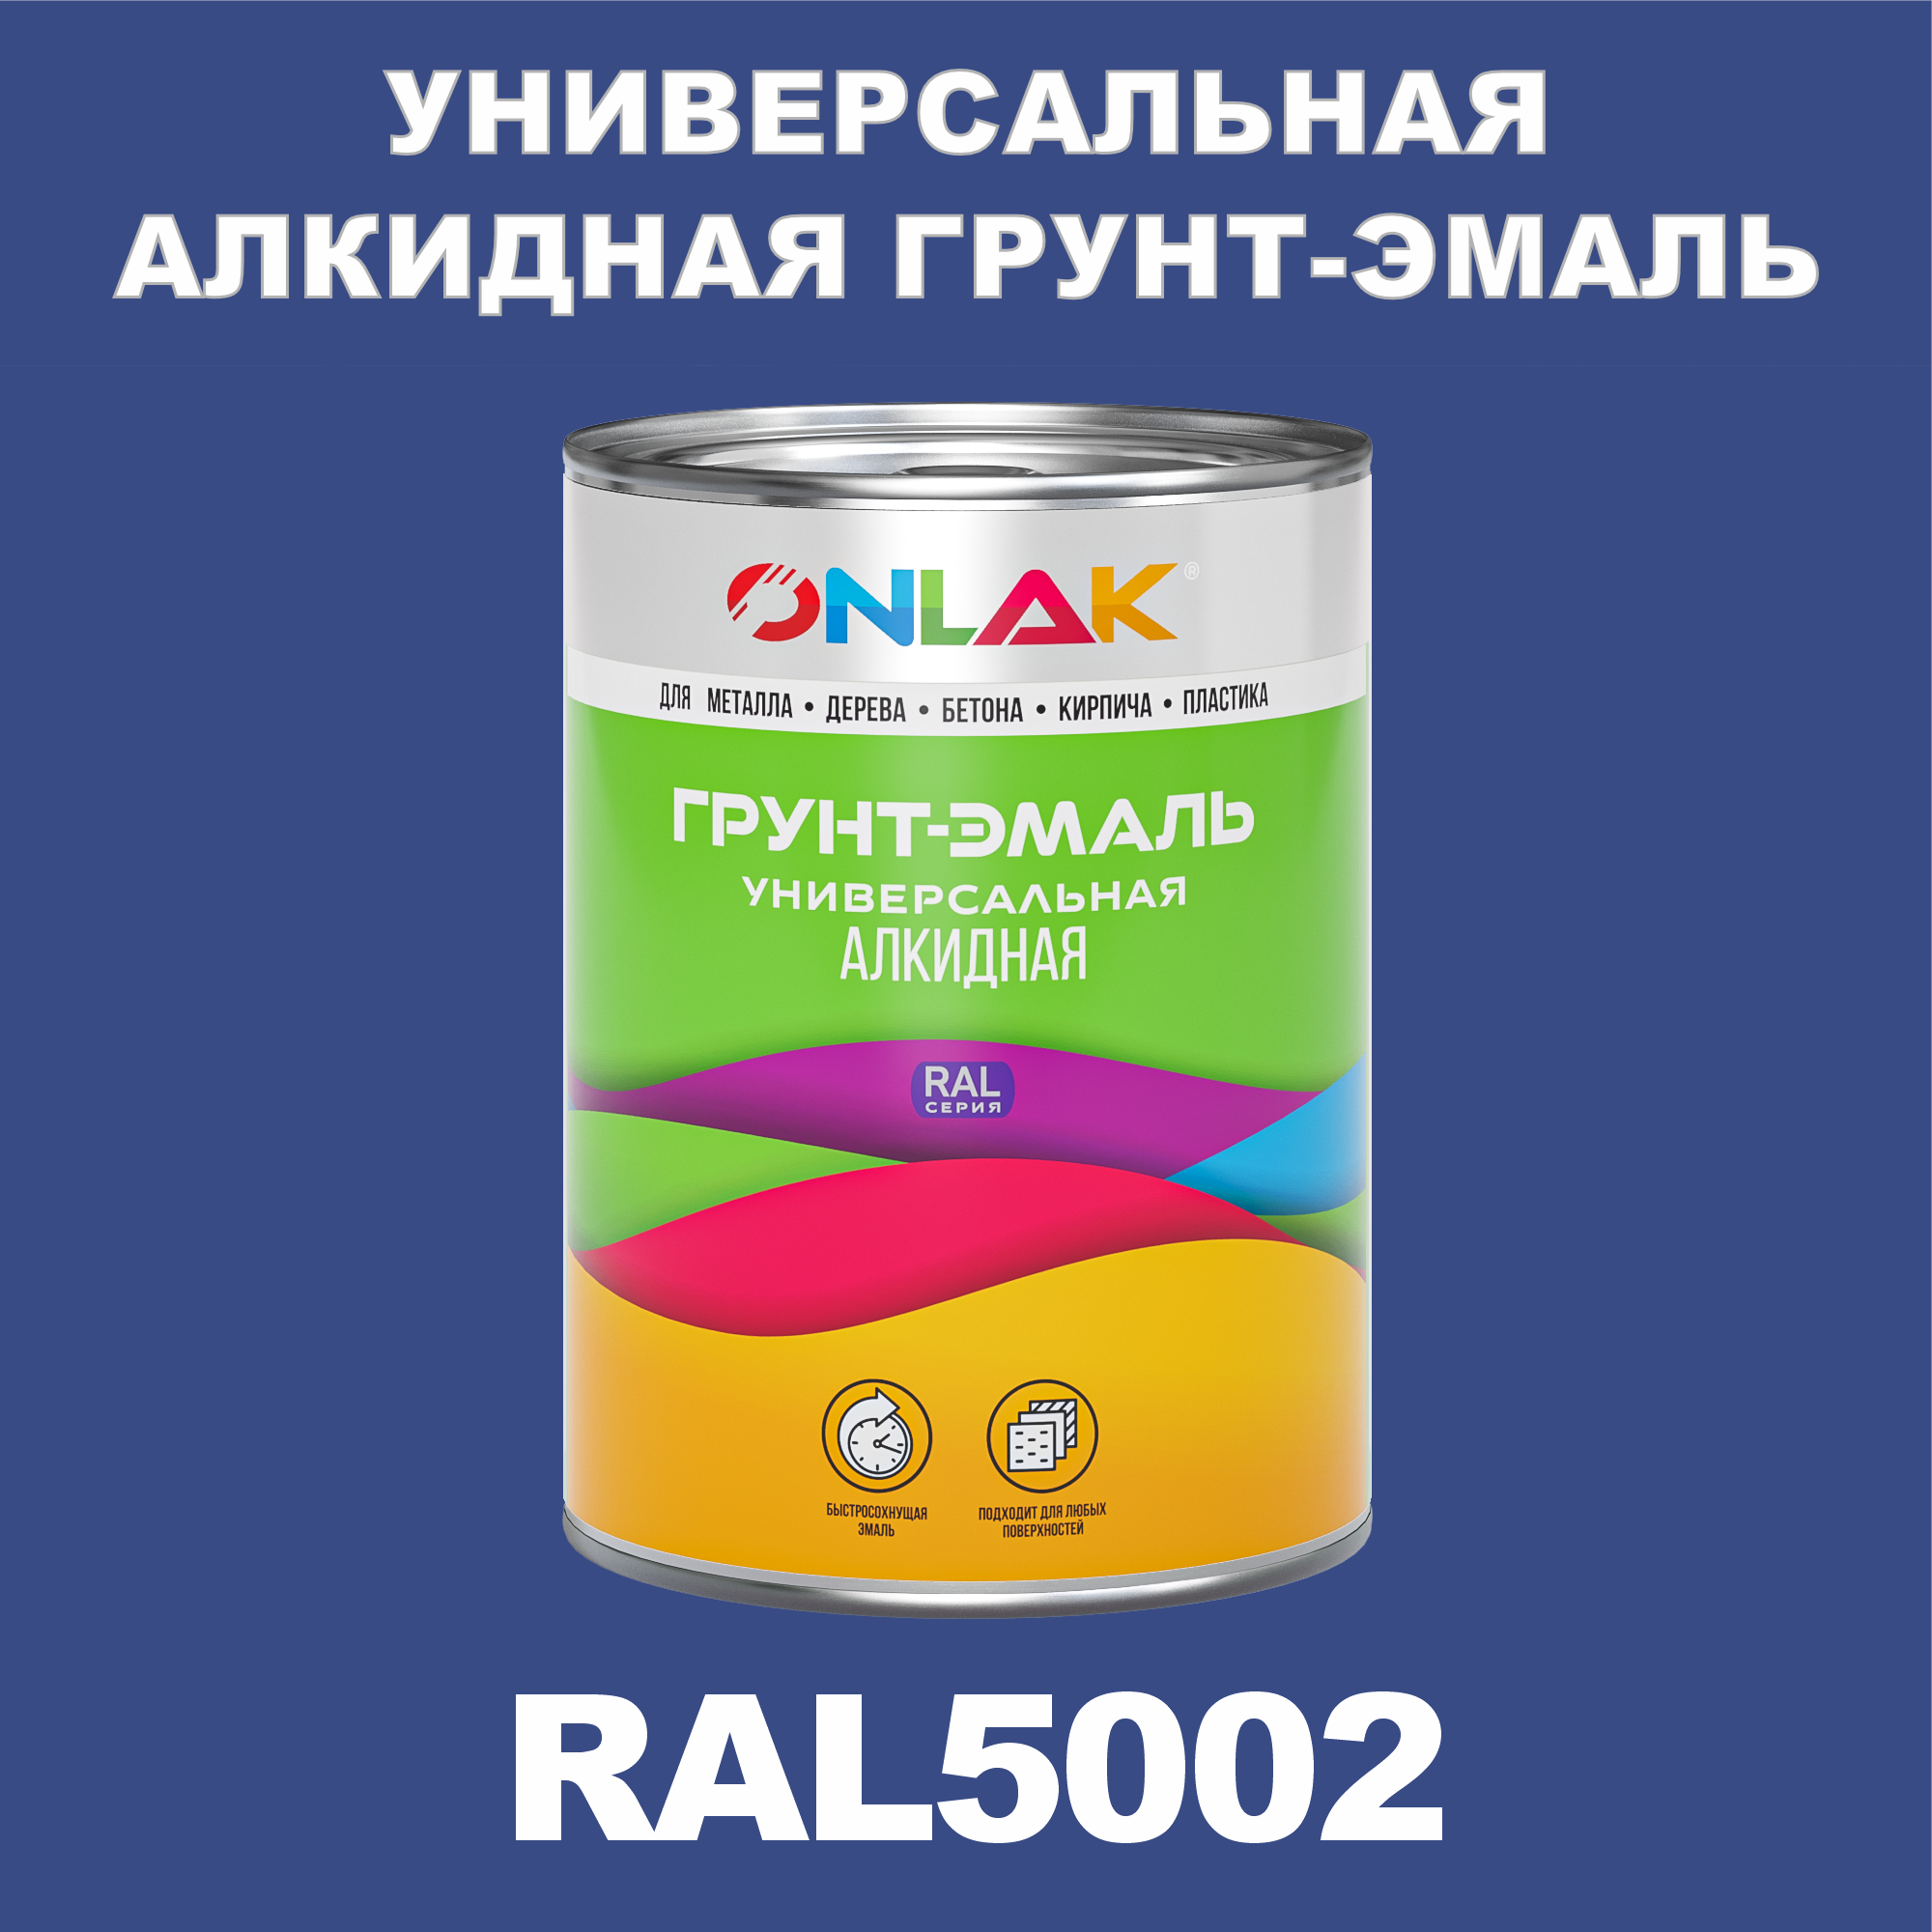 Грунт-эмаль ONLAK 1К RAL5002 антикоррозионная алкидная по металлу по ржавчине 1 кг грунт эмаль май по ржавчине алкидная серая 1 9 кг